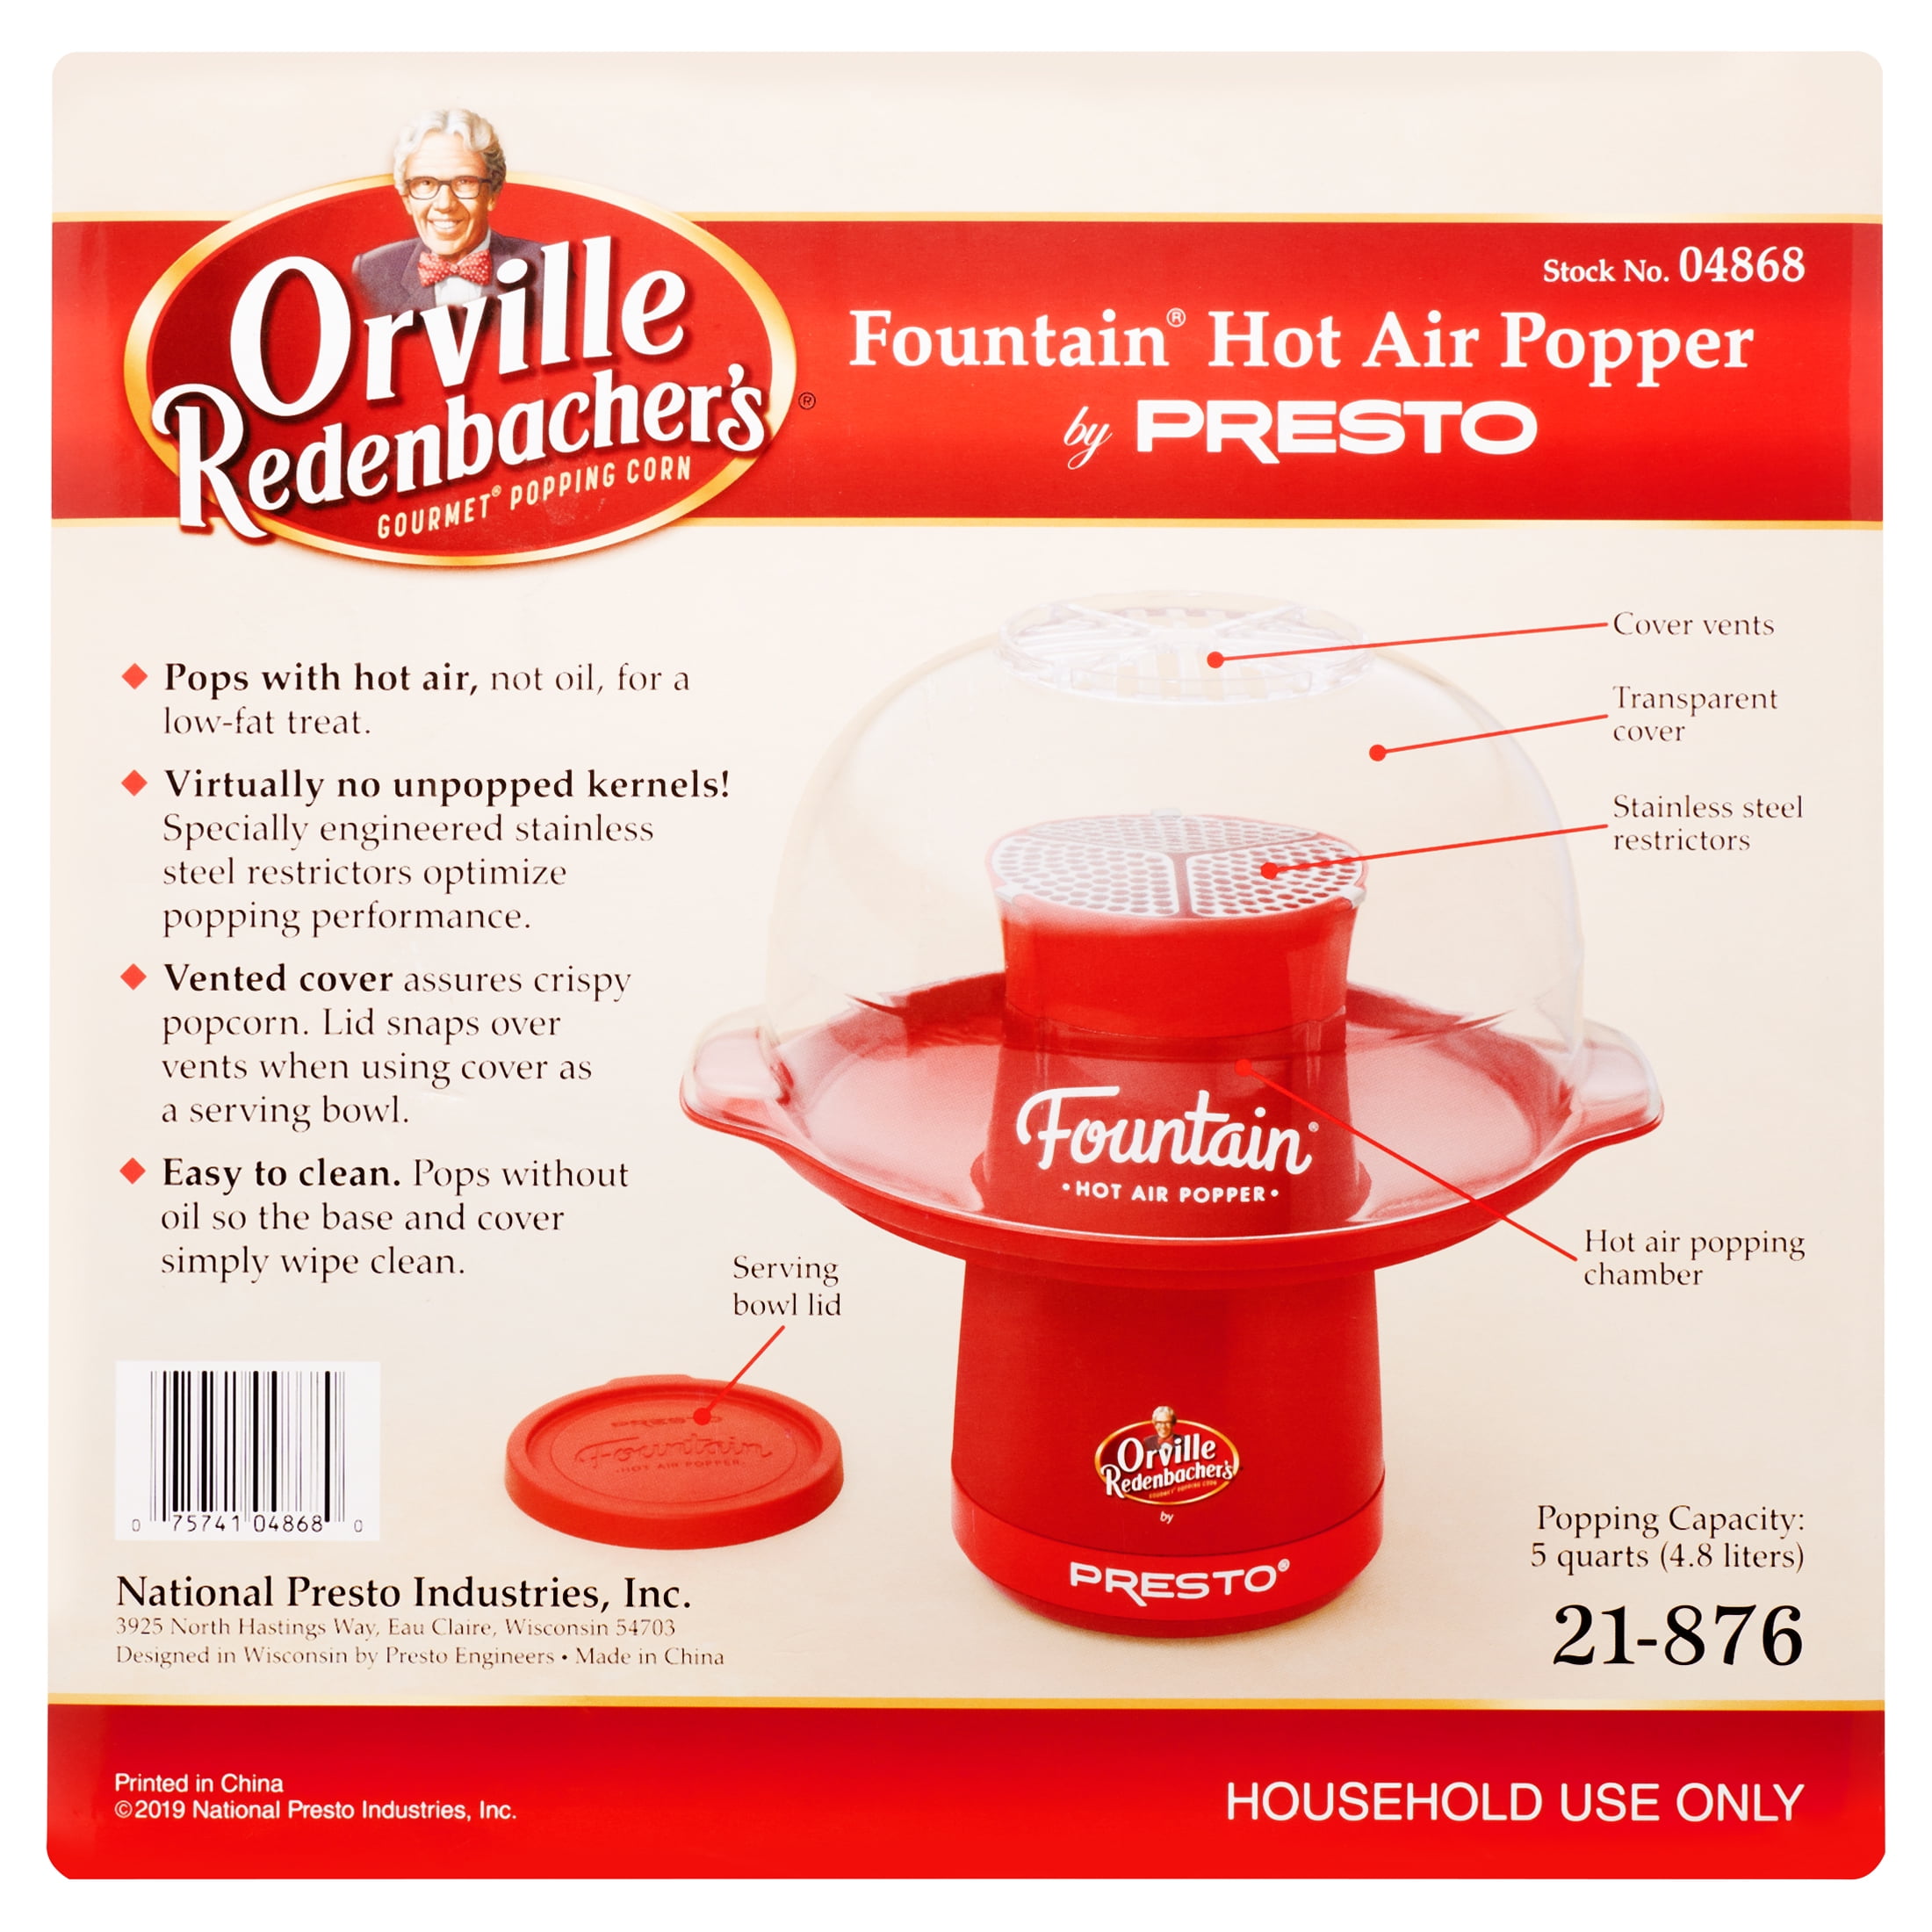 Orville Redenbacher's® Fountain® Hot Air Popper